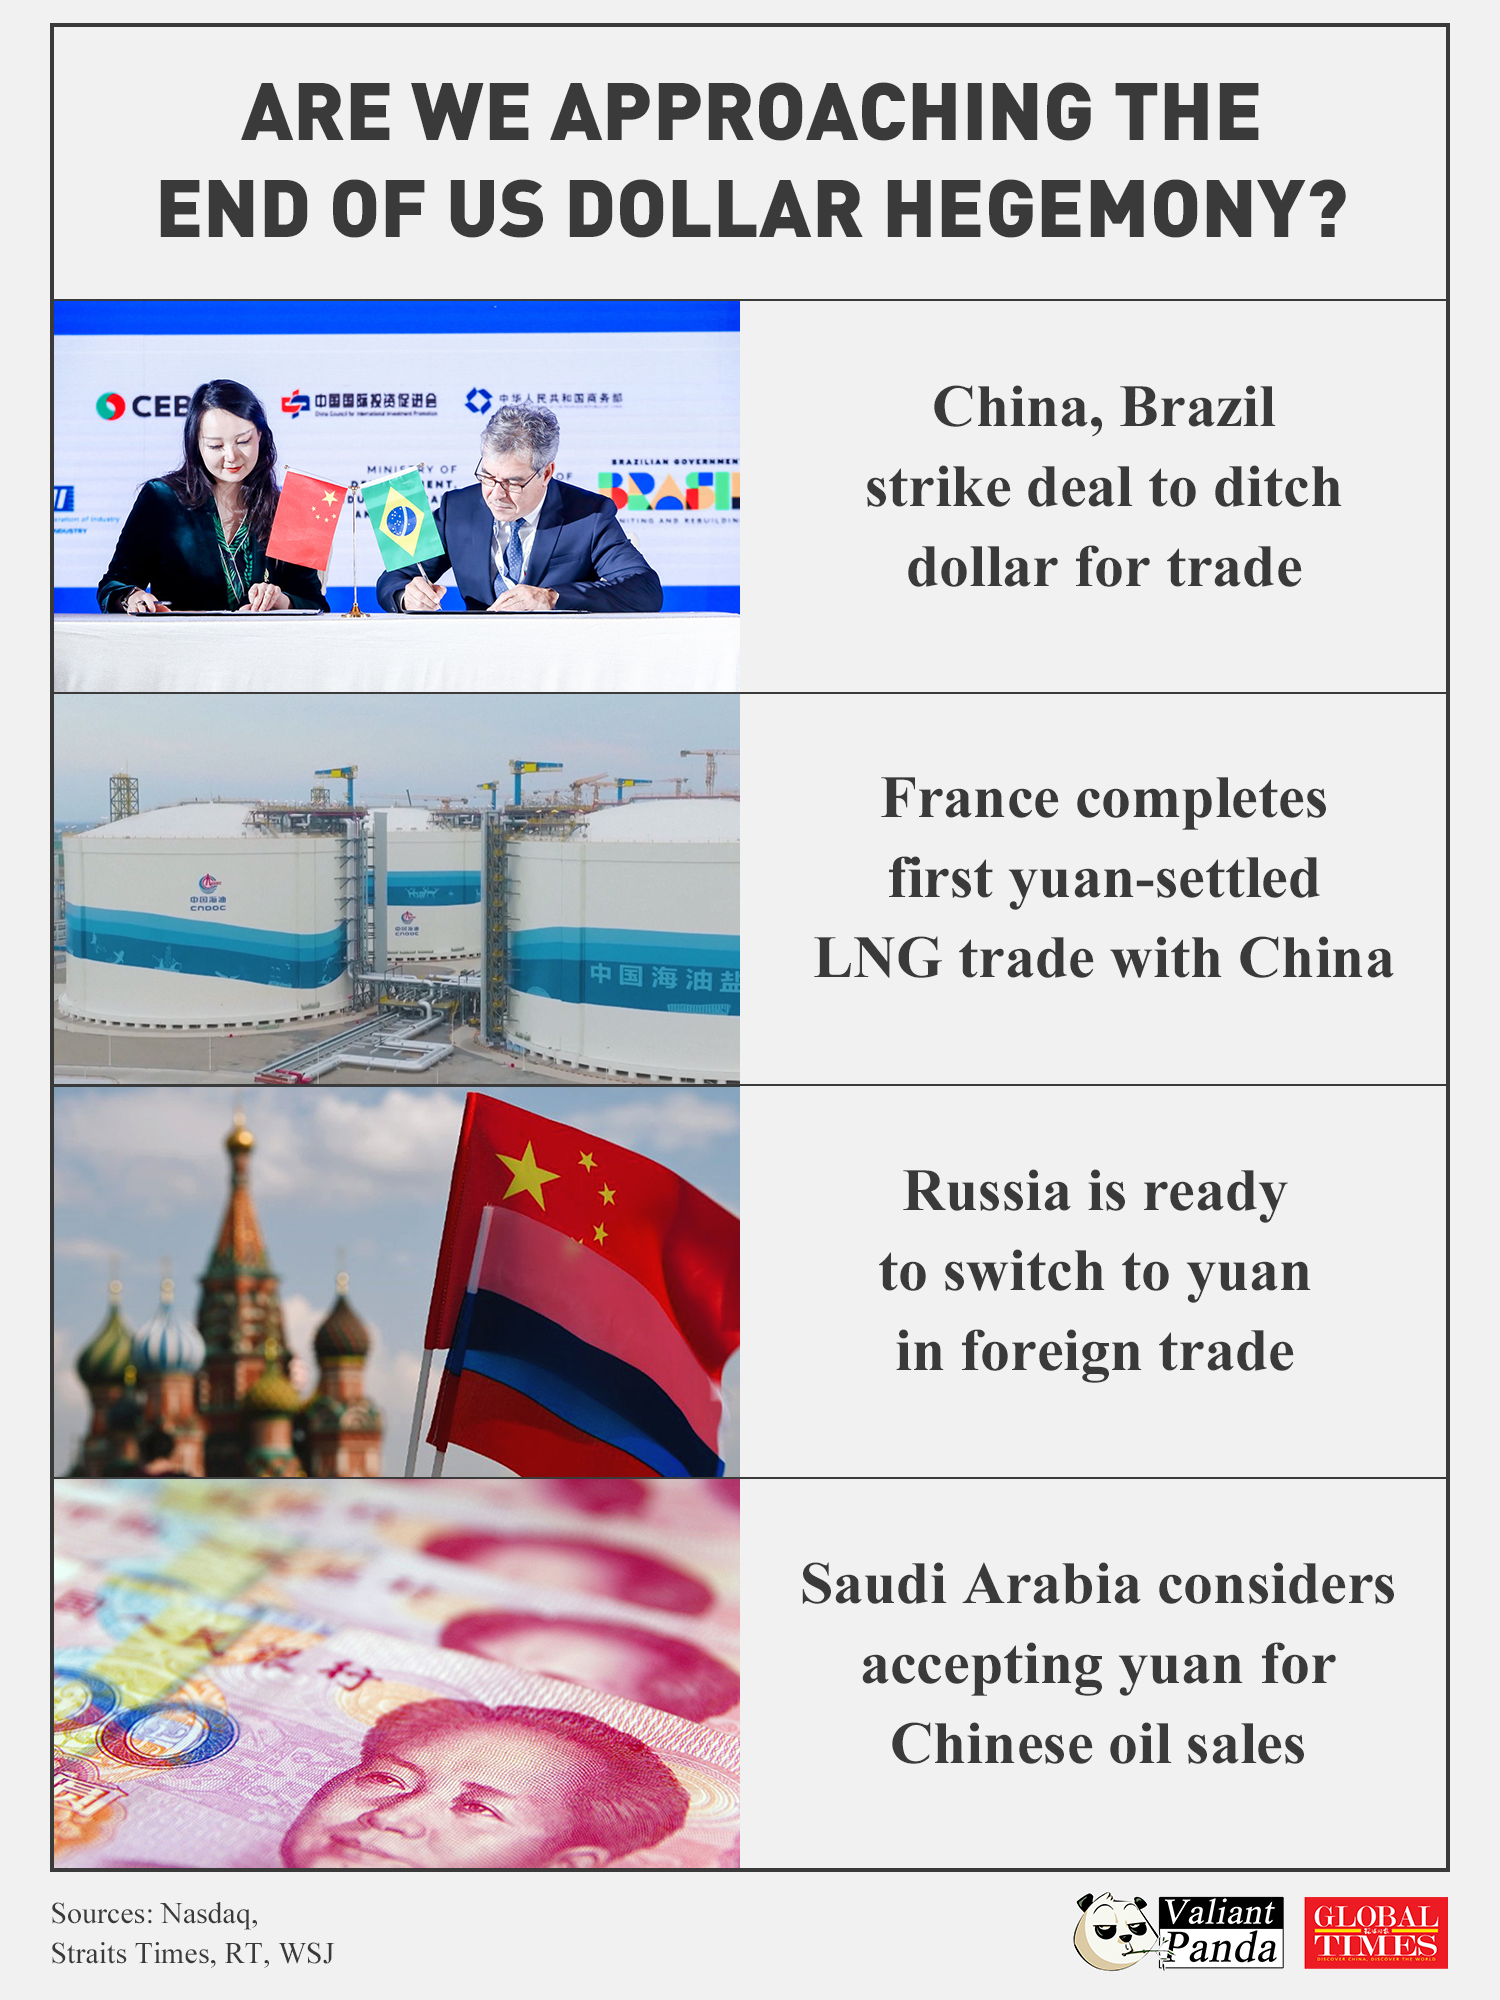 Αποχαιρετάει ο κόσμος την ηγεμονία του δολαρίου;  Περισσότερες χώρες στρέφονται στο γιουάν για εμπόριο.  Γραφικό: GT